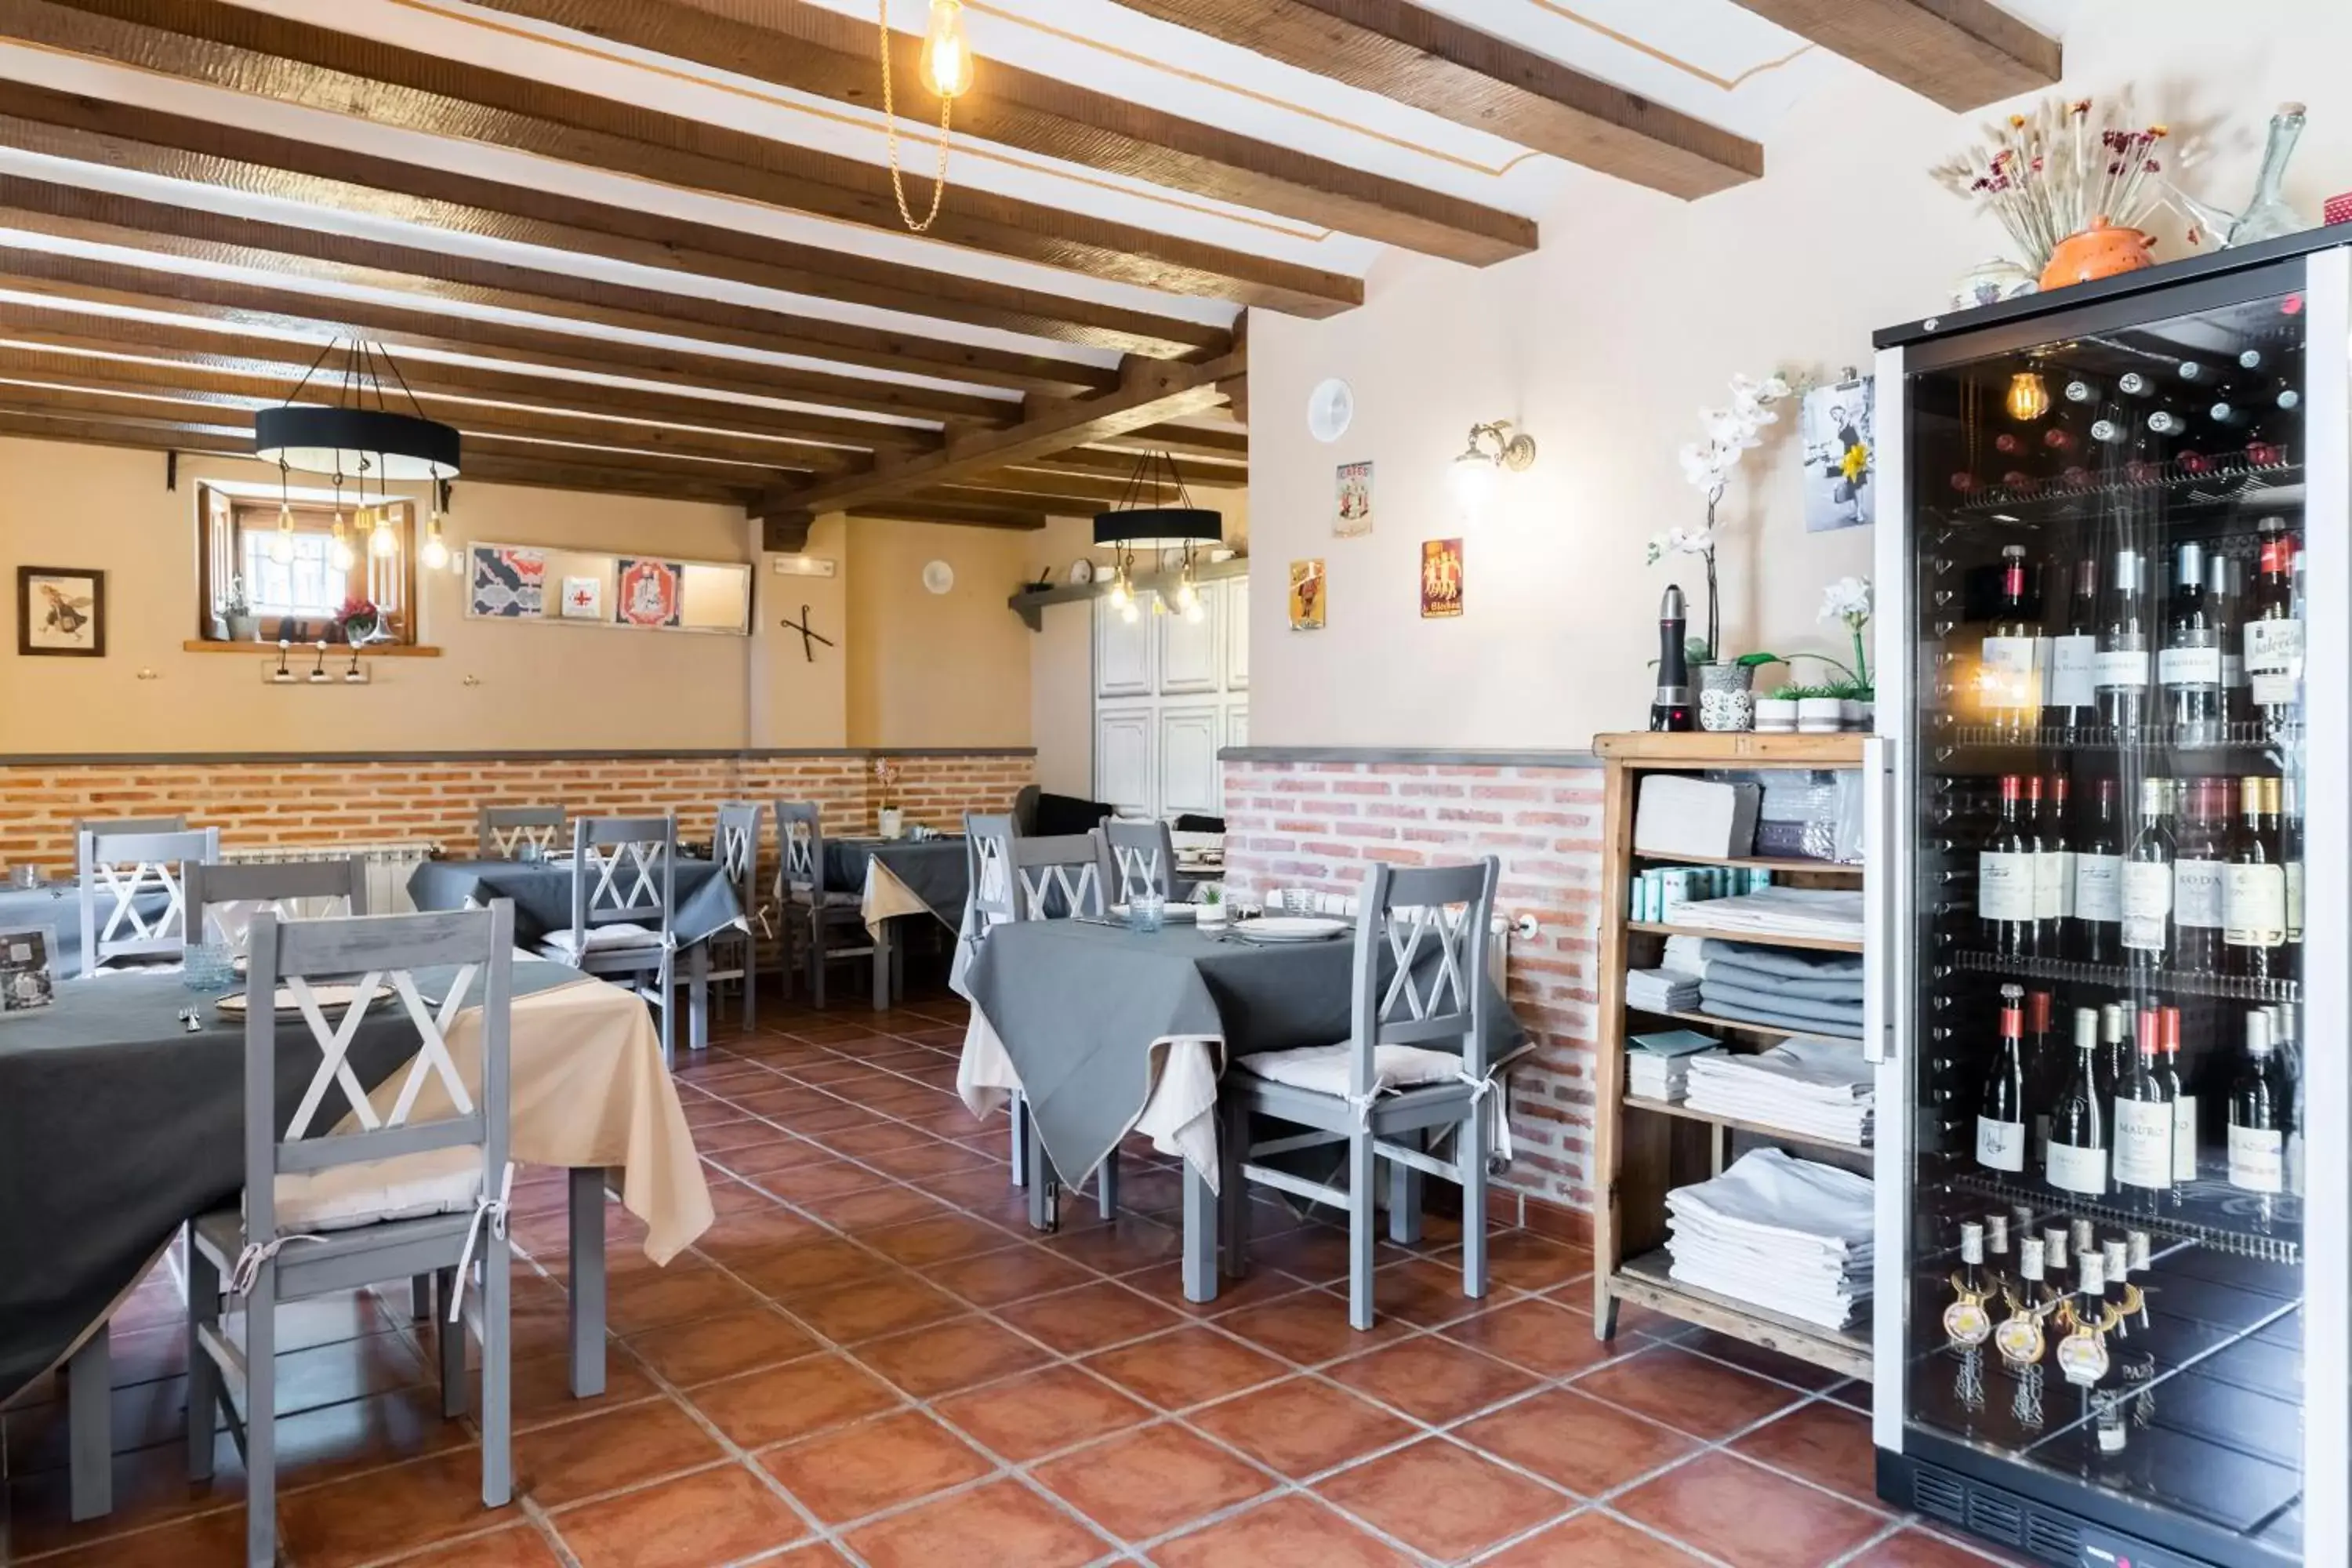 Restaurant/places to eat in El Torreon de Navacerrada